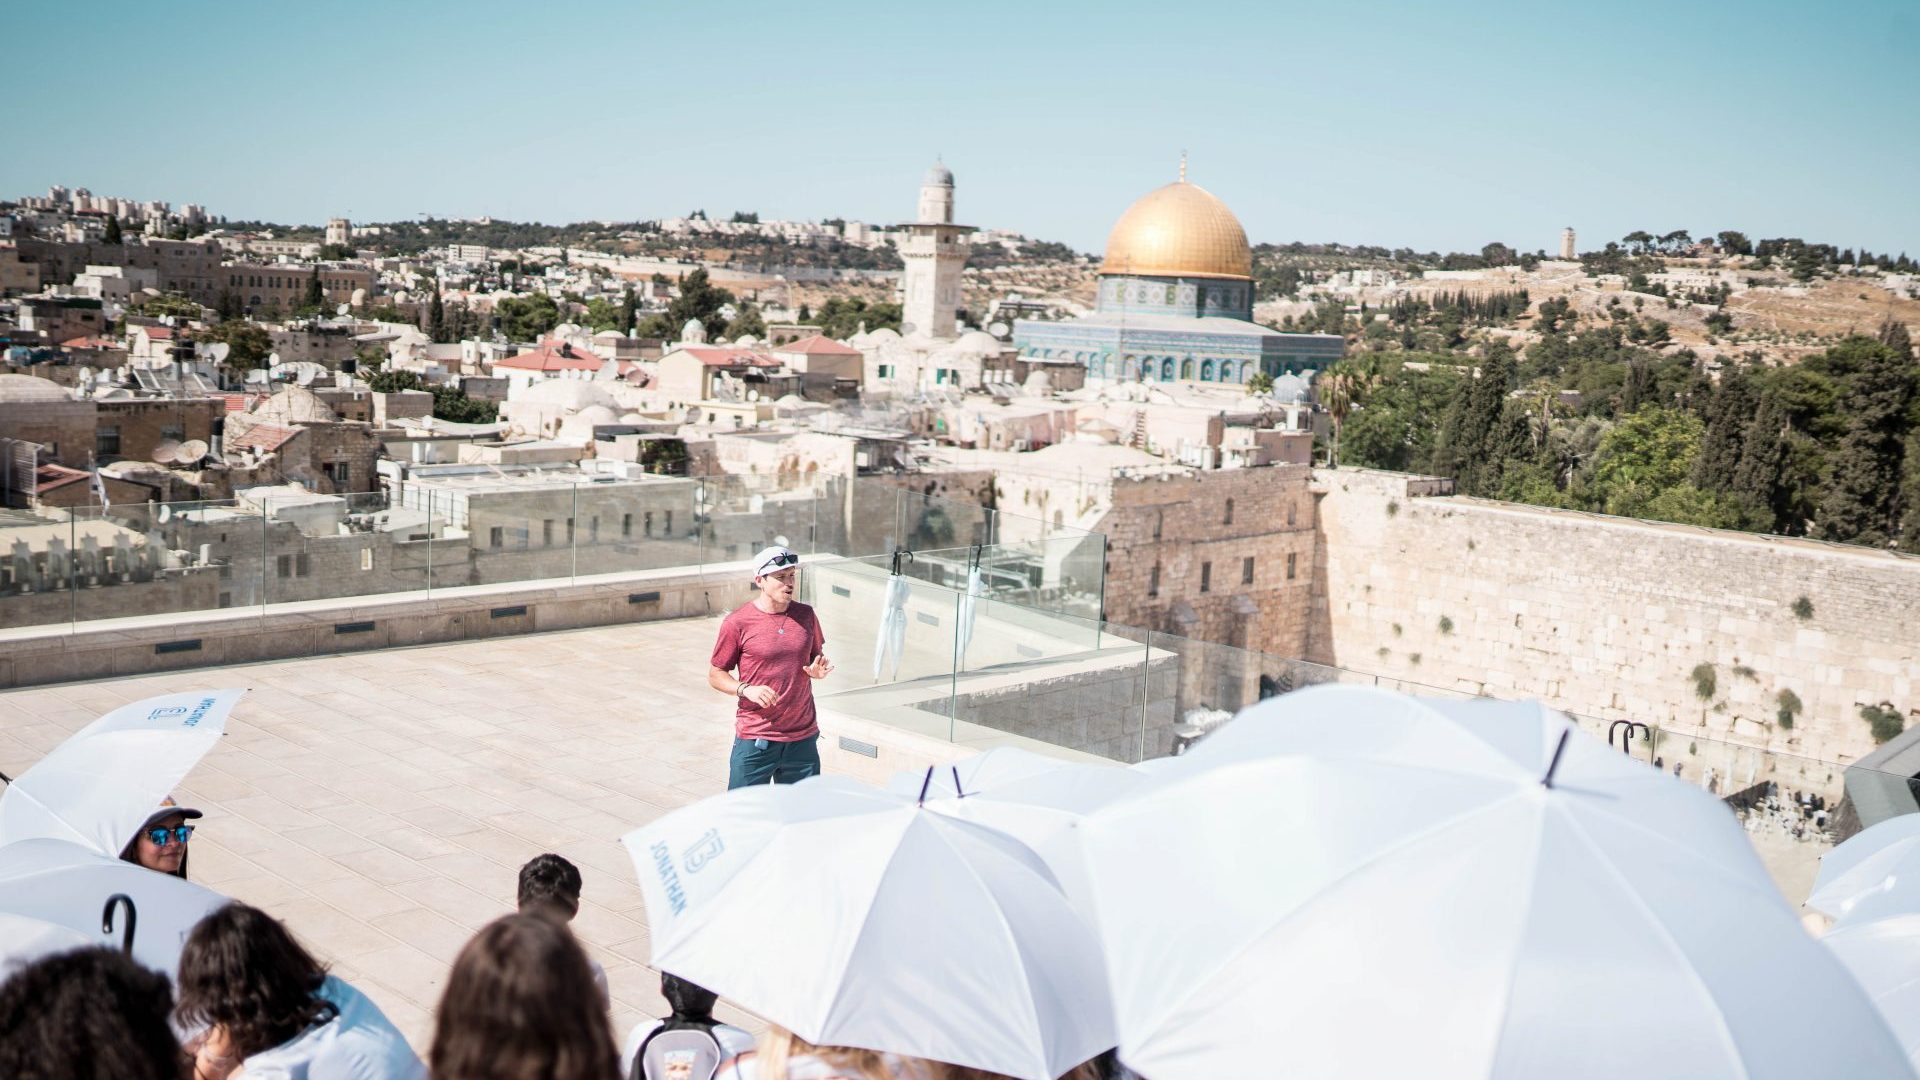 ארז לנדאו מדריך טיולים בכיר מדבר אל מול קבוצה בגג מול הכותל בירושלים